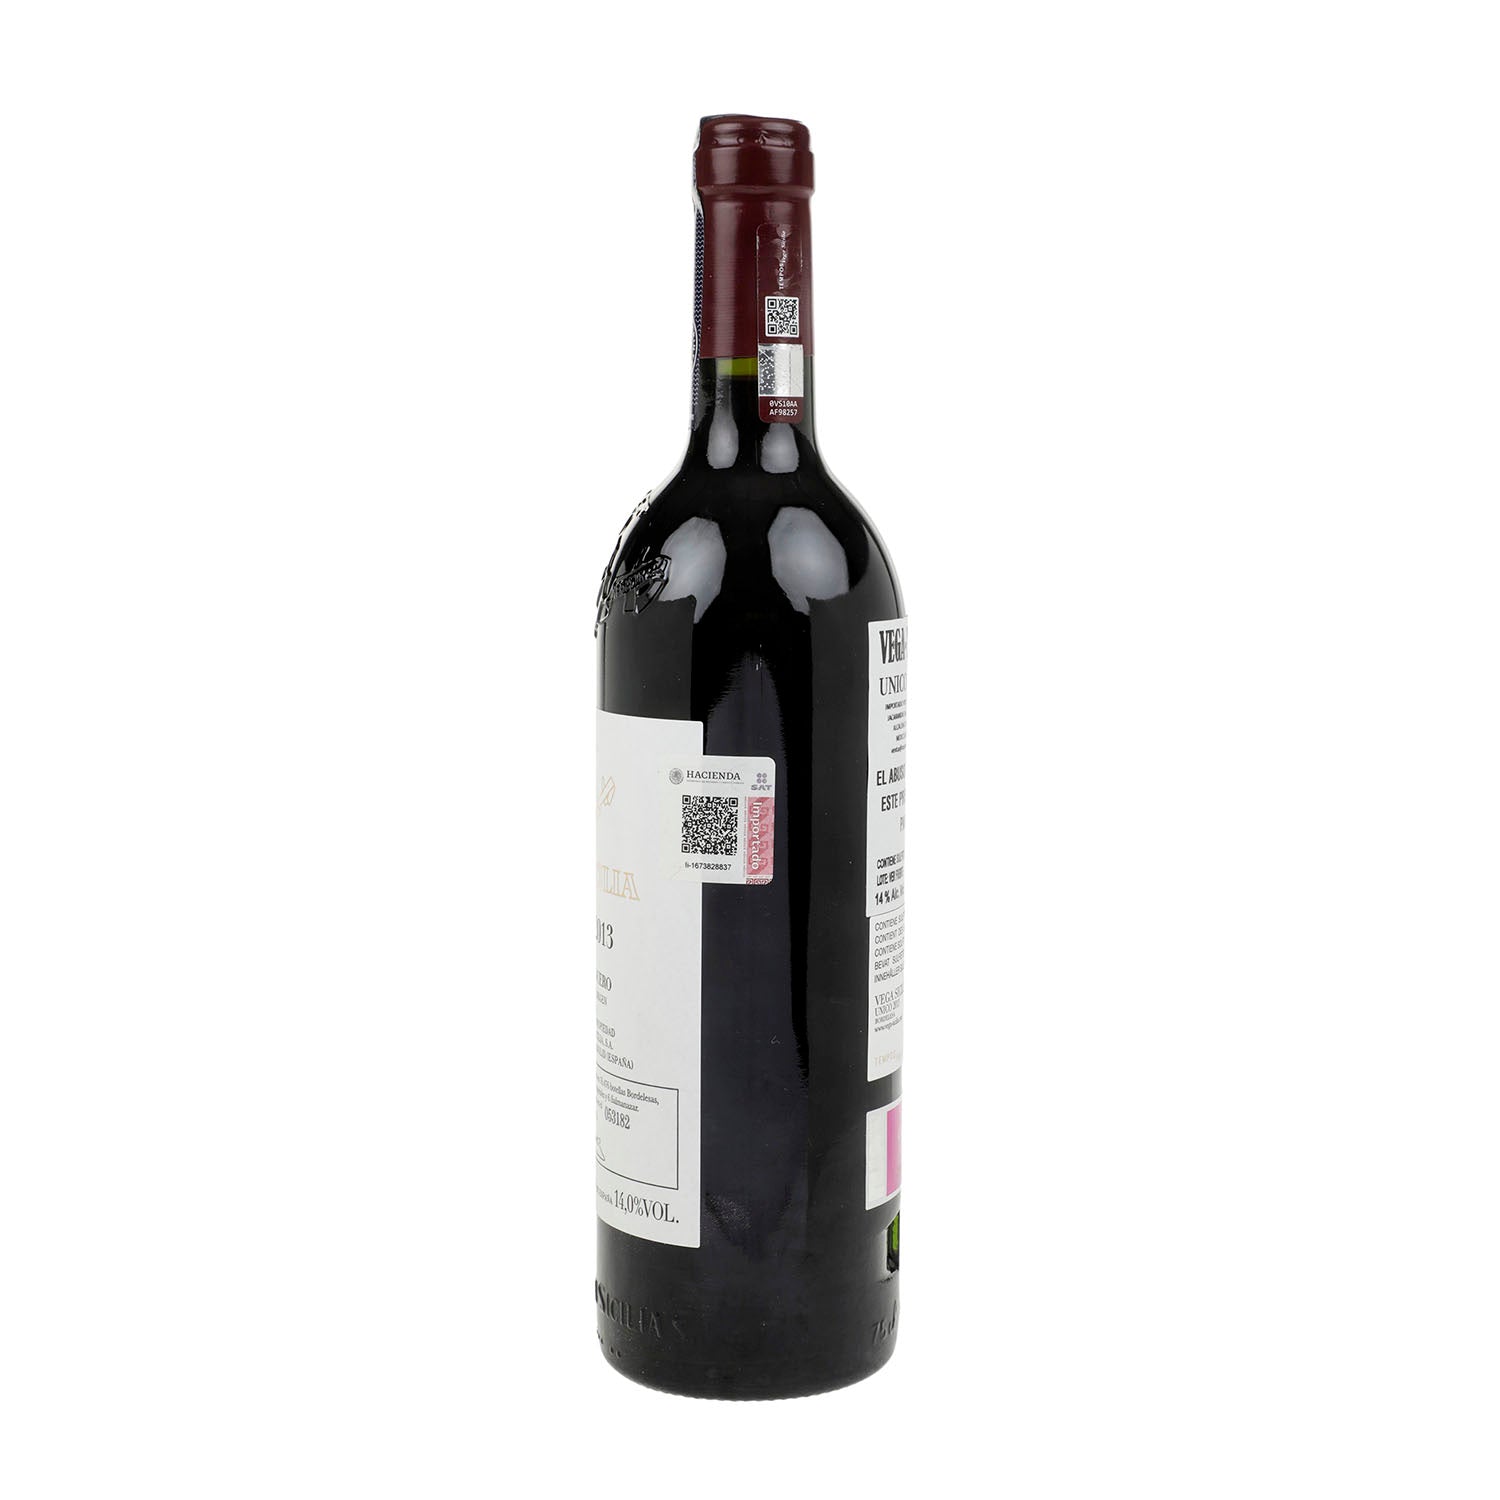 Vino Tinto Vega Sicilia Unico 13 de 0750 ml